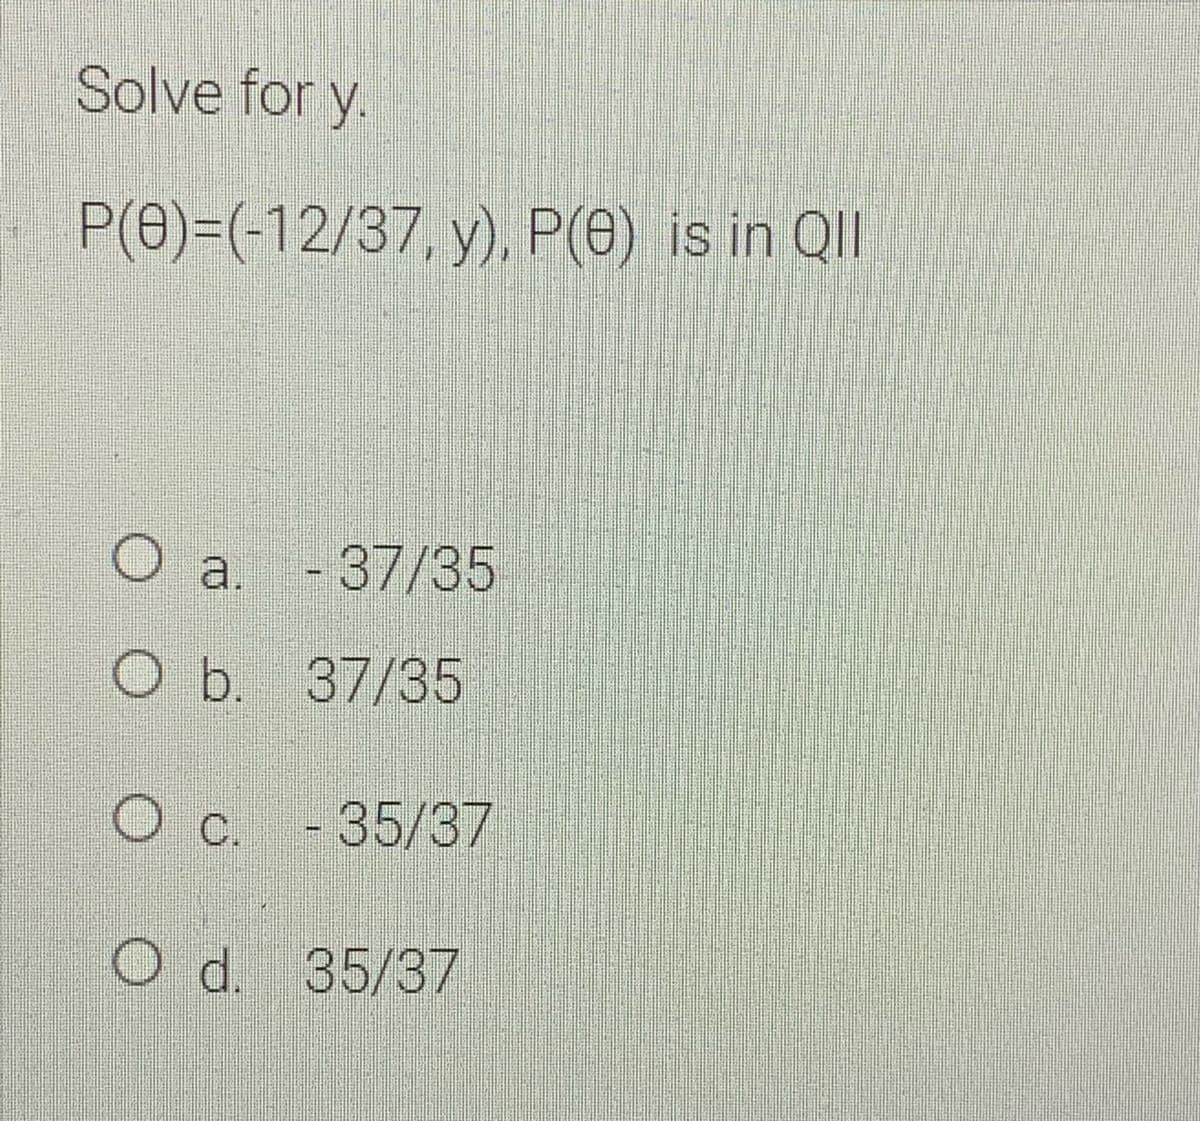 Solve for y.
P(0)=(-12/37, y), P(0) is in Qll
a. - 37/35
O b. 37/35
O c. -35/37
Od. 35/37
